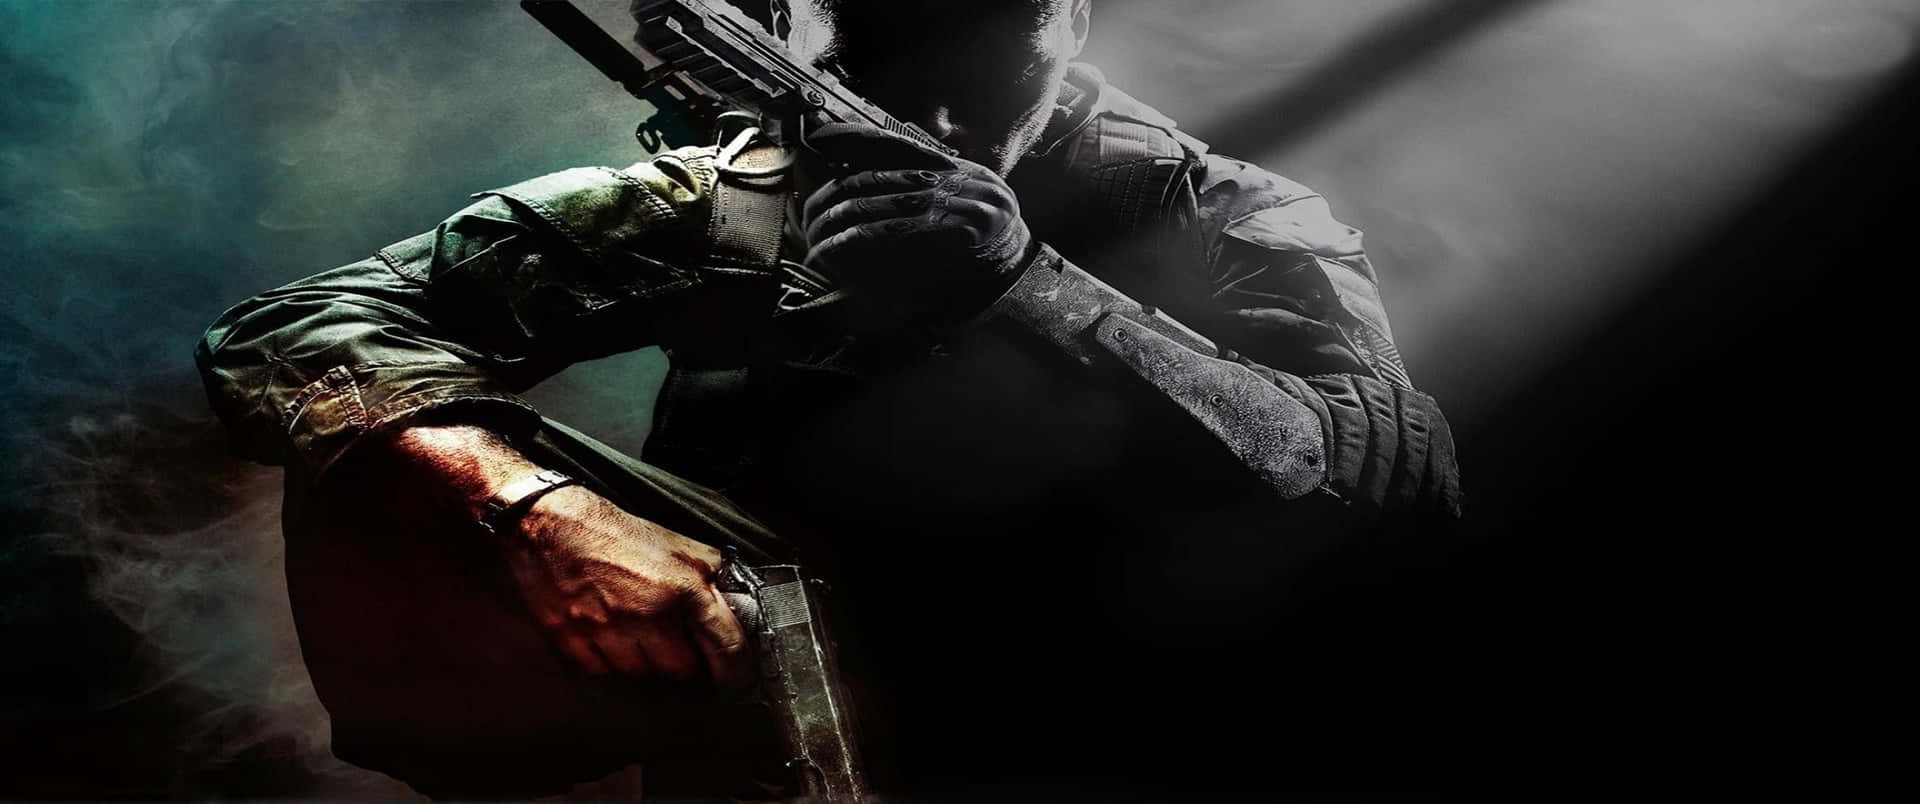 Preparatiper La Battaglia Con Call Of Duty Black Ops Cold War.